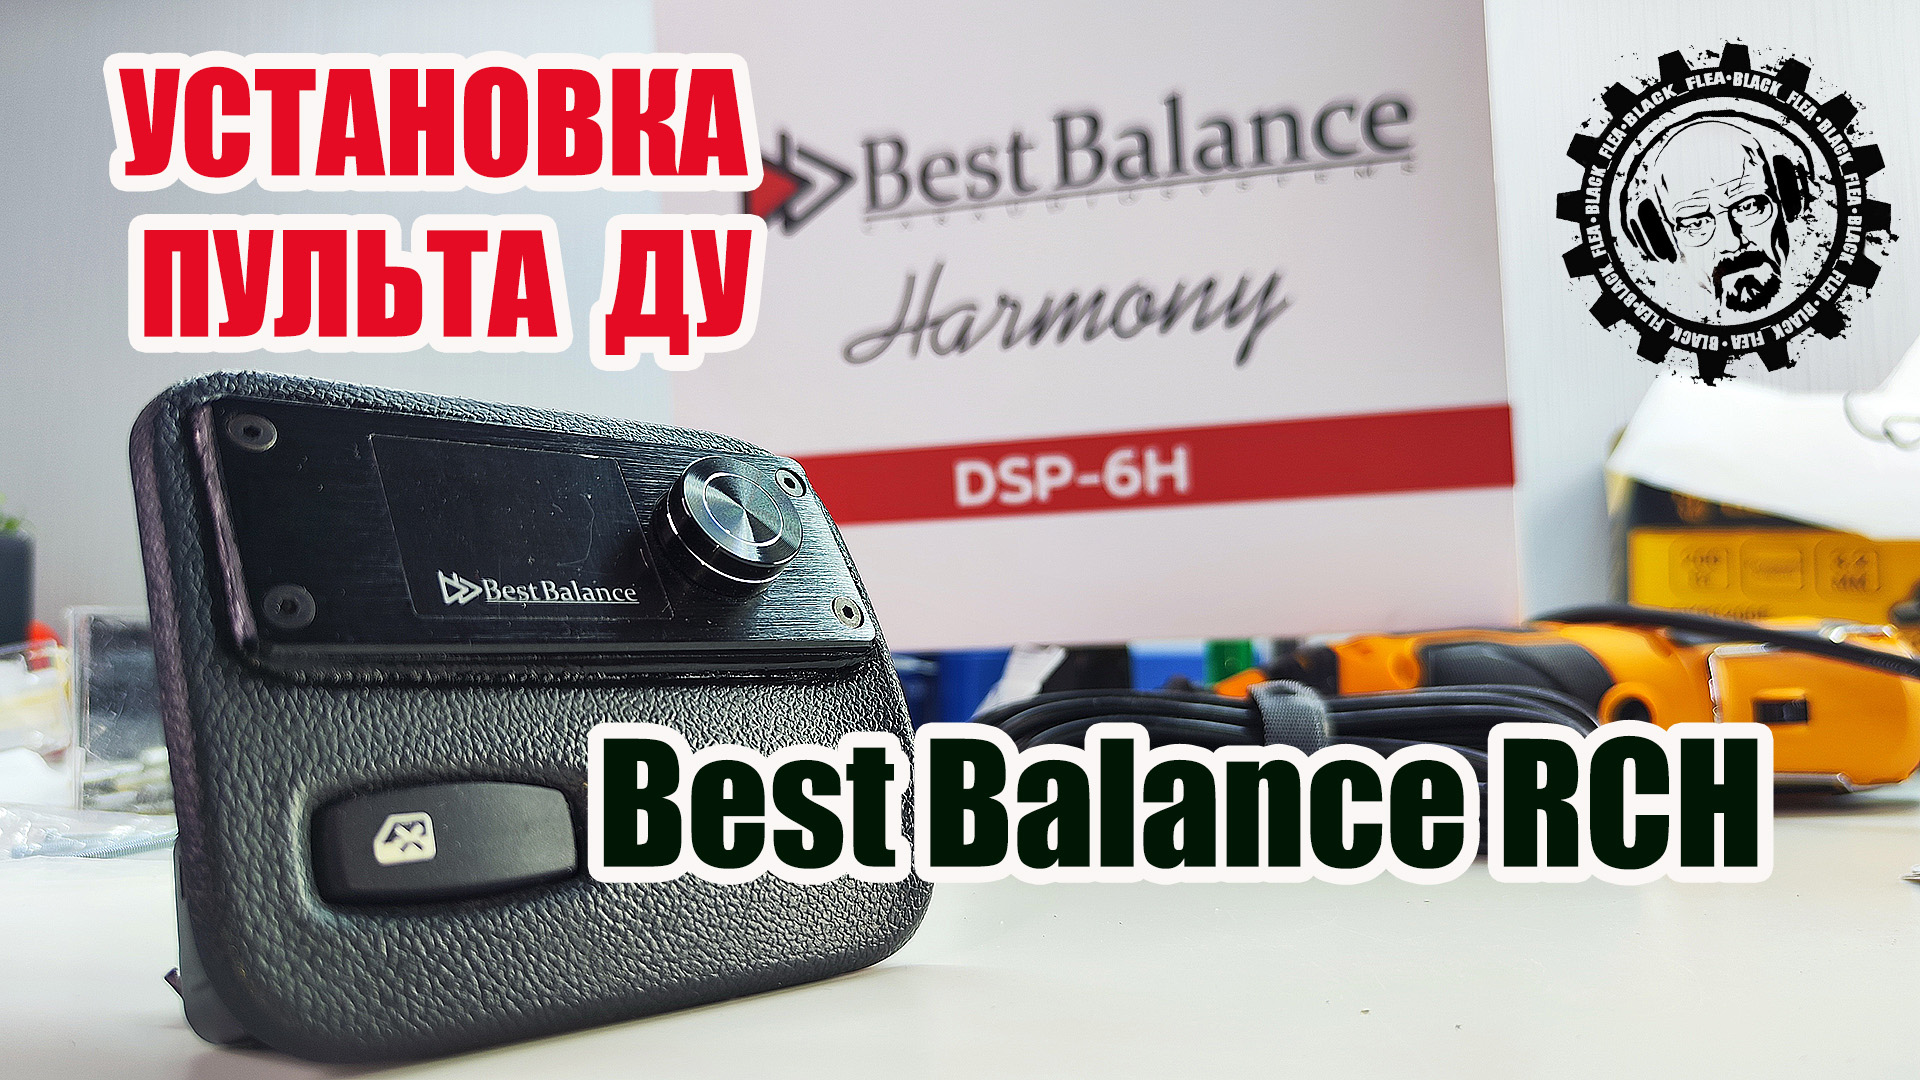 Установка Дистанционного пульта управления Best Balance RCH для процеуся Best Balance DSP-6H